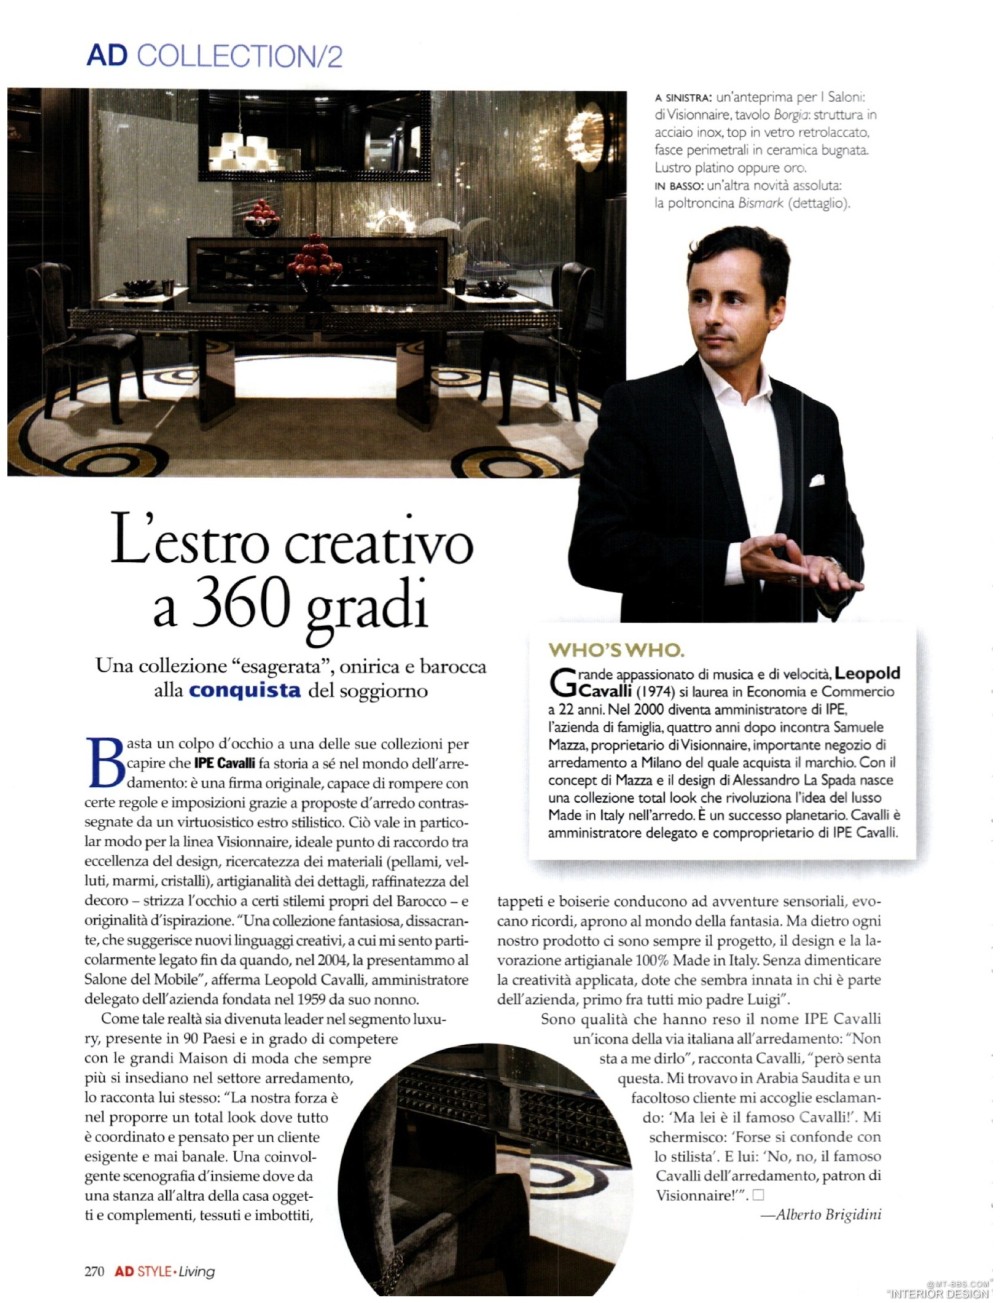 意大利AD 杂志 2012年全年JPG高清版本 全免（上传完毕）_0046.jpg